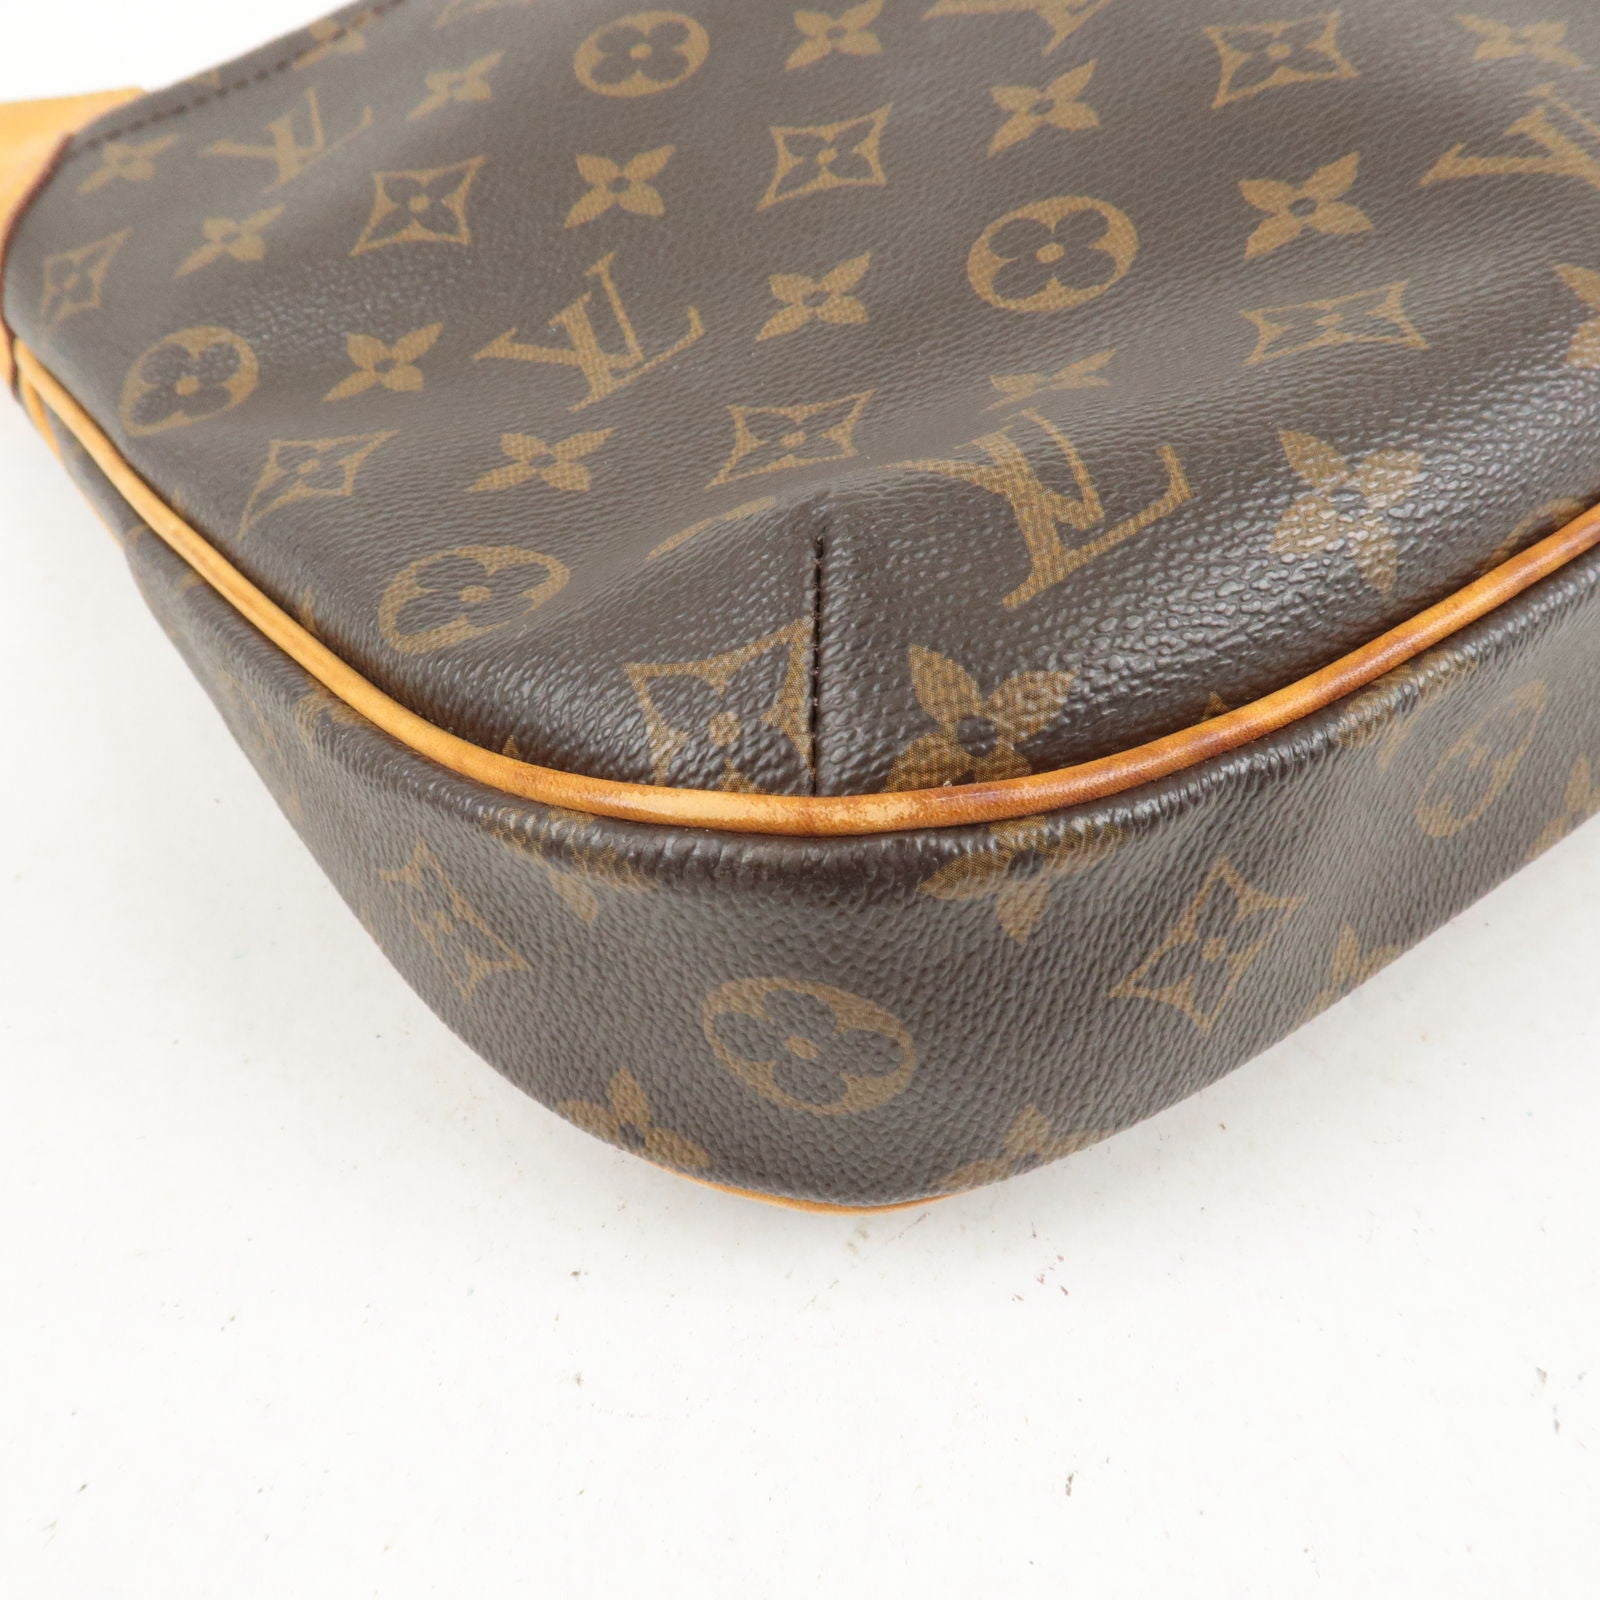 Vuitton - PM - Shoulder - Louis - Bag - Monogram - M56390 – dct